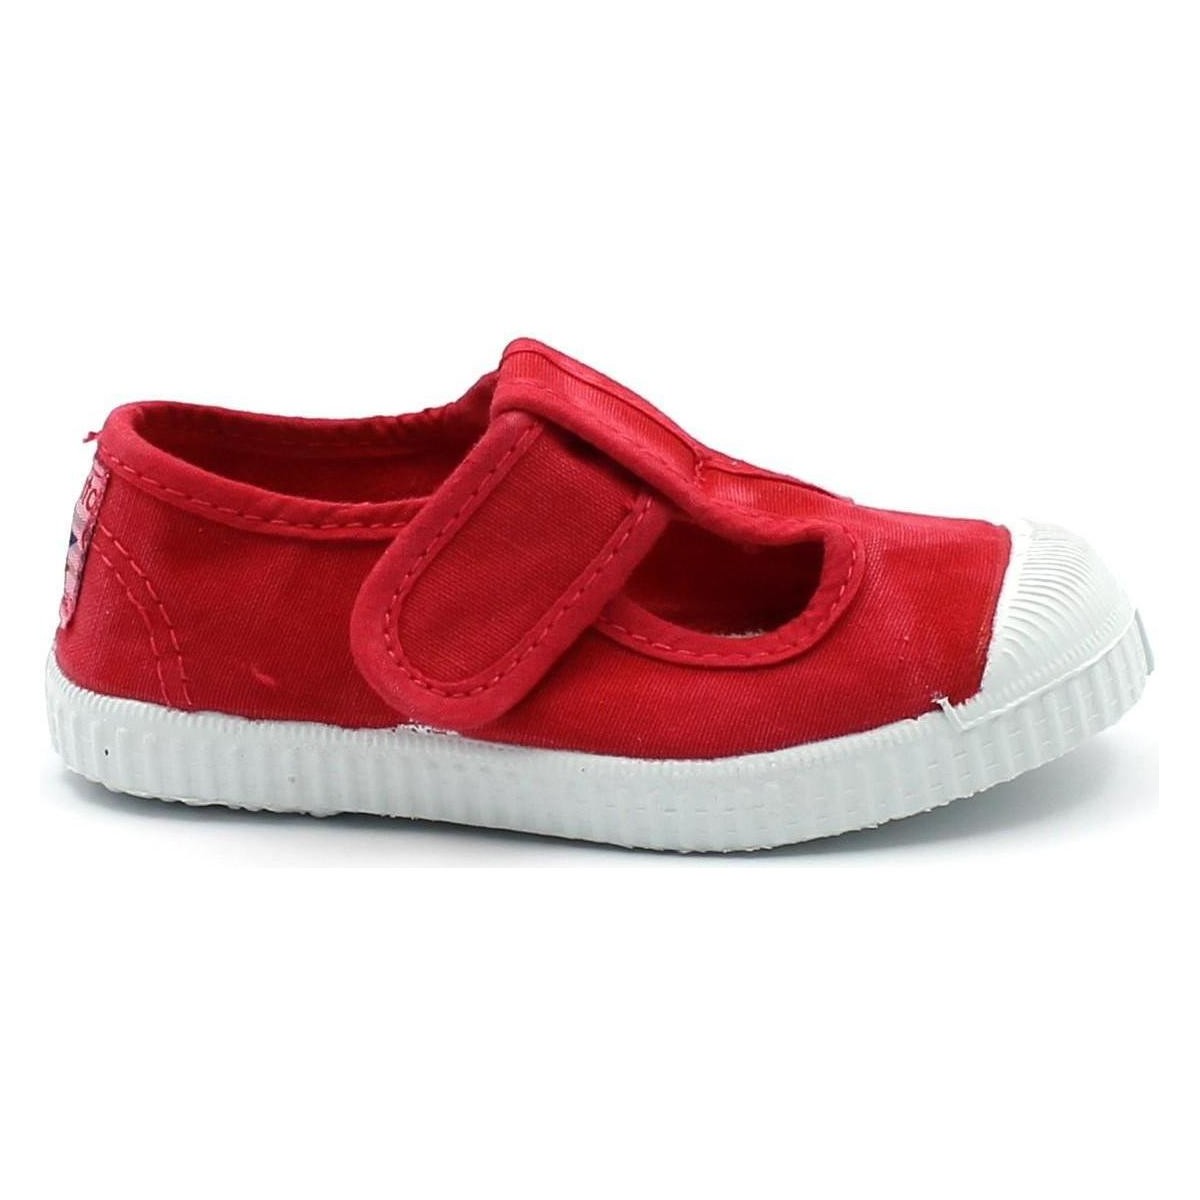 Chaussures Enfant Sandales et Nu-pieds Cienta CIE-CCC-77777-67 Blanc